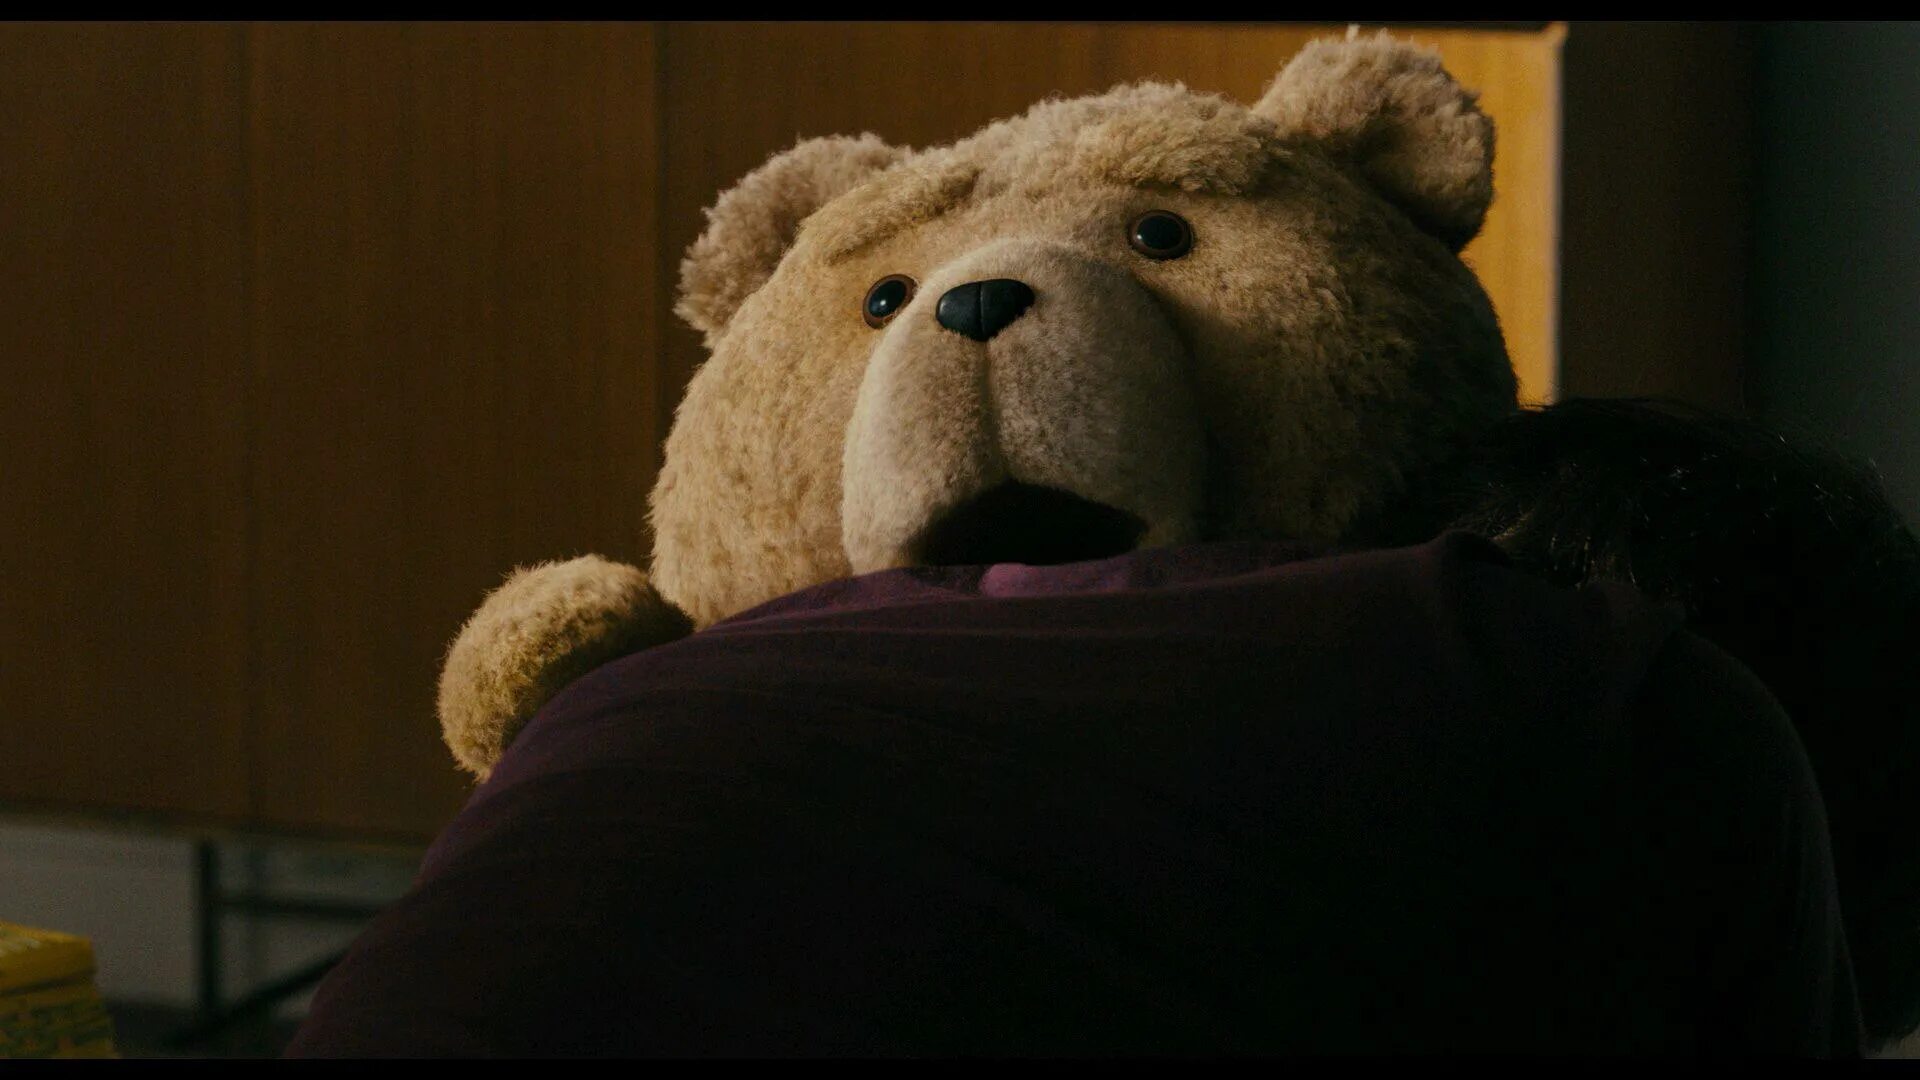 Третий лишний 5. Тед 2012. Третий лишний / Ted (2012). Медведь Тед. Мишка Тед третий лишний.